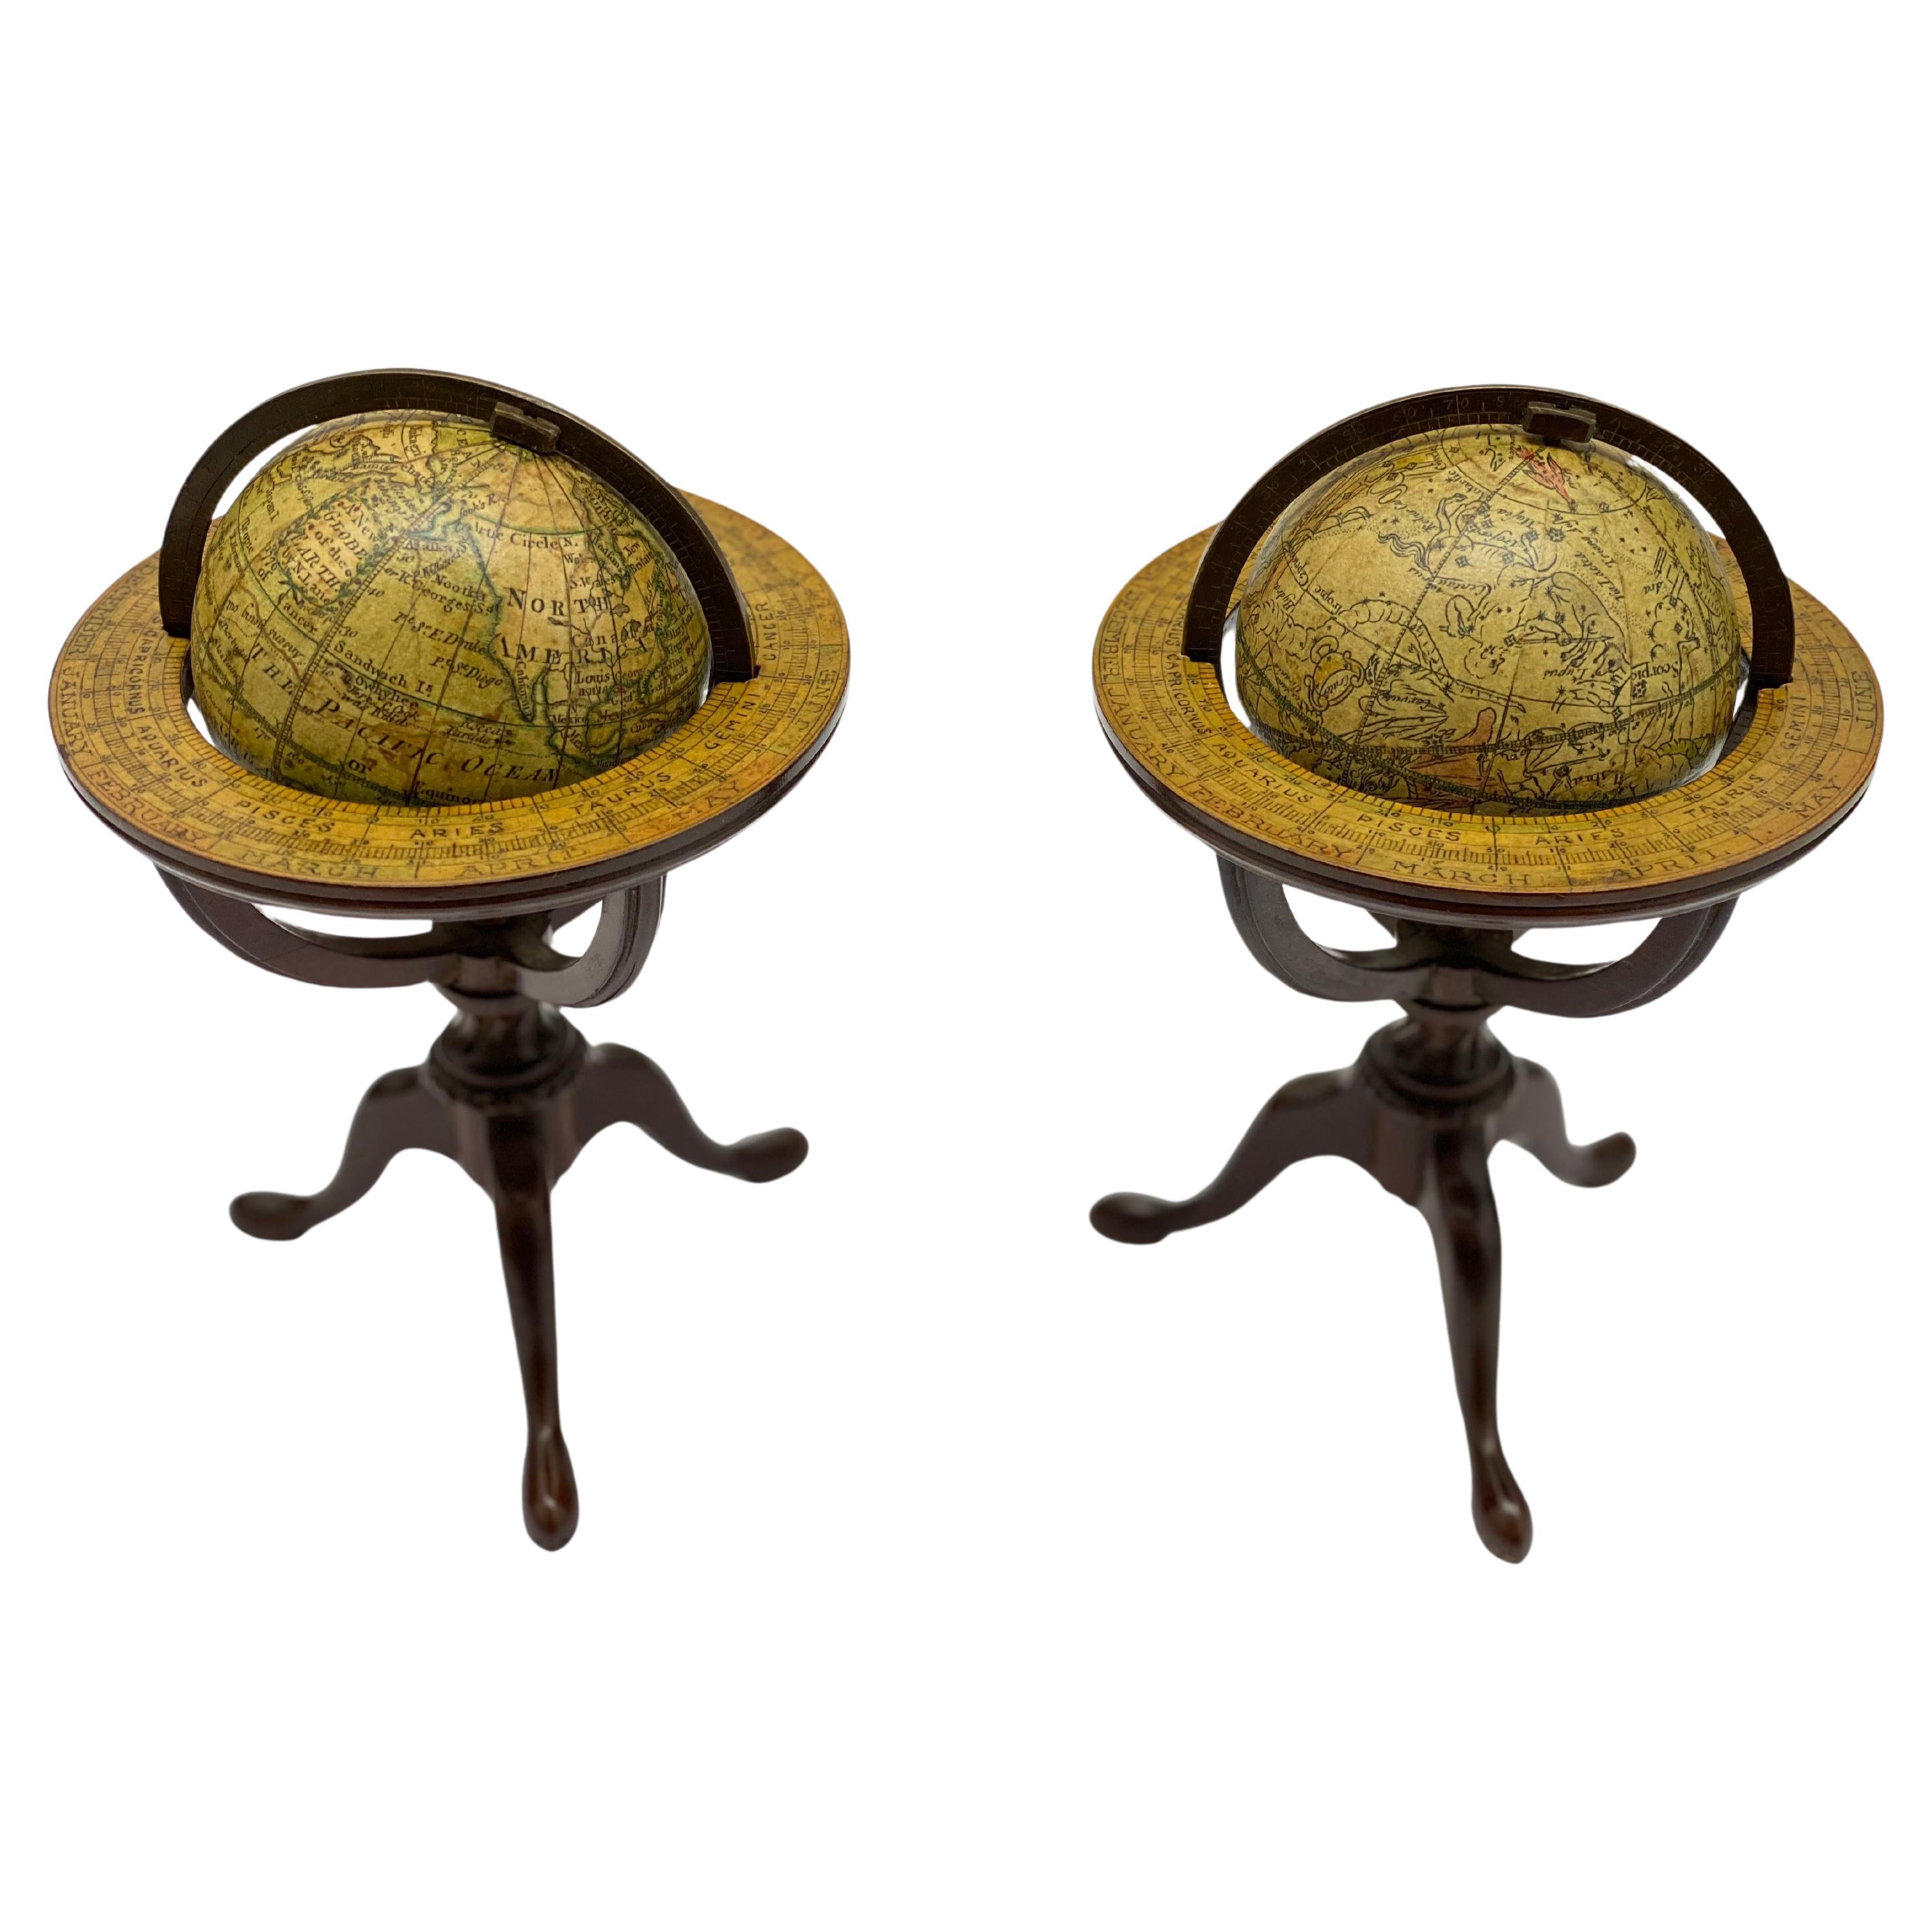  Paire de globes de poche anglais de la fin du XVIIIe siècle 